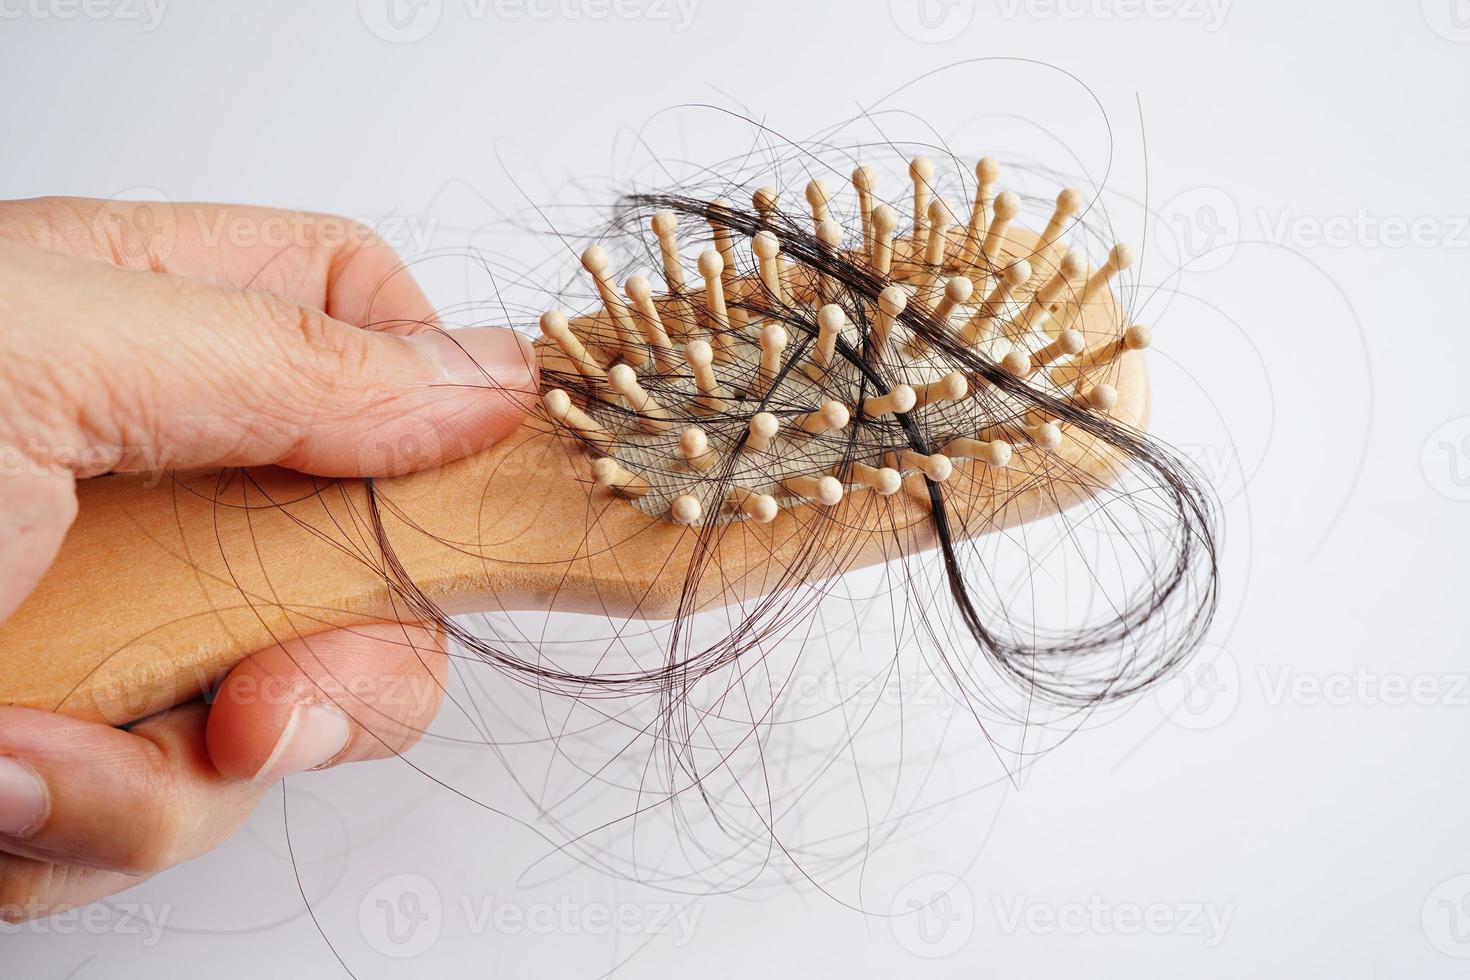 asiatische Frau hat Probleme mit langem Haarausfall an der Kammbürste. foto